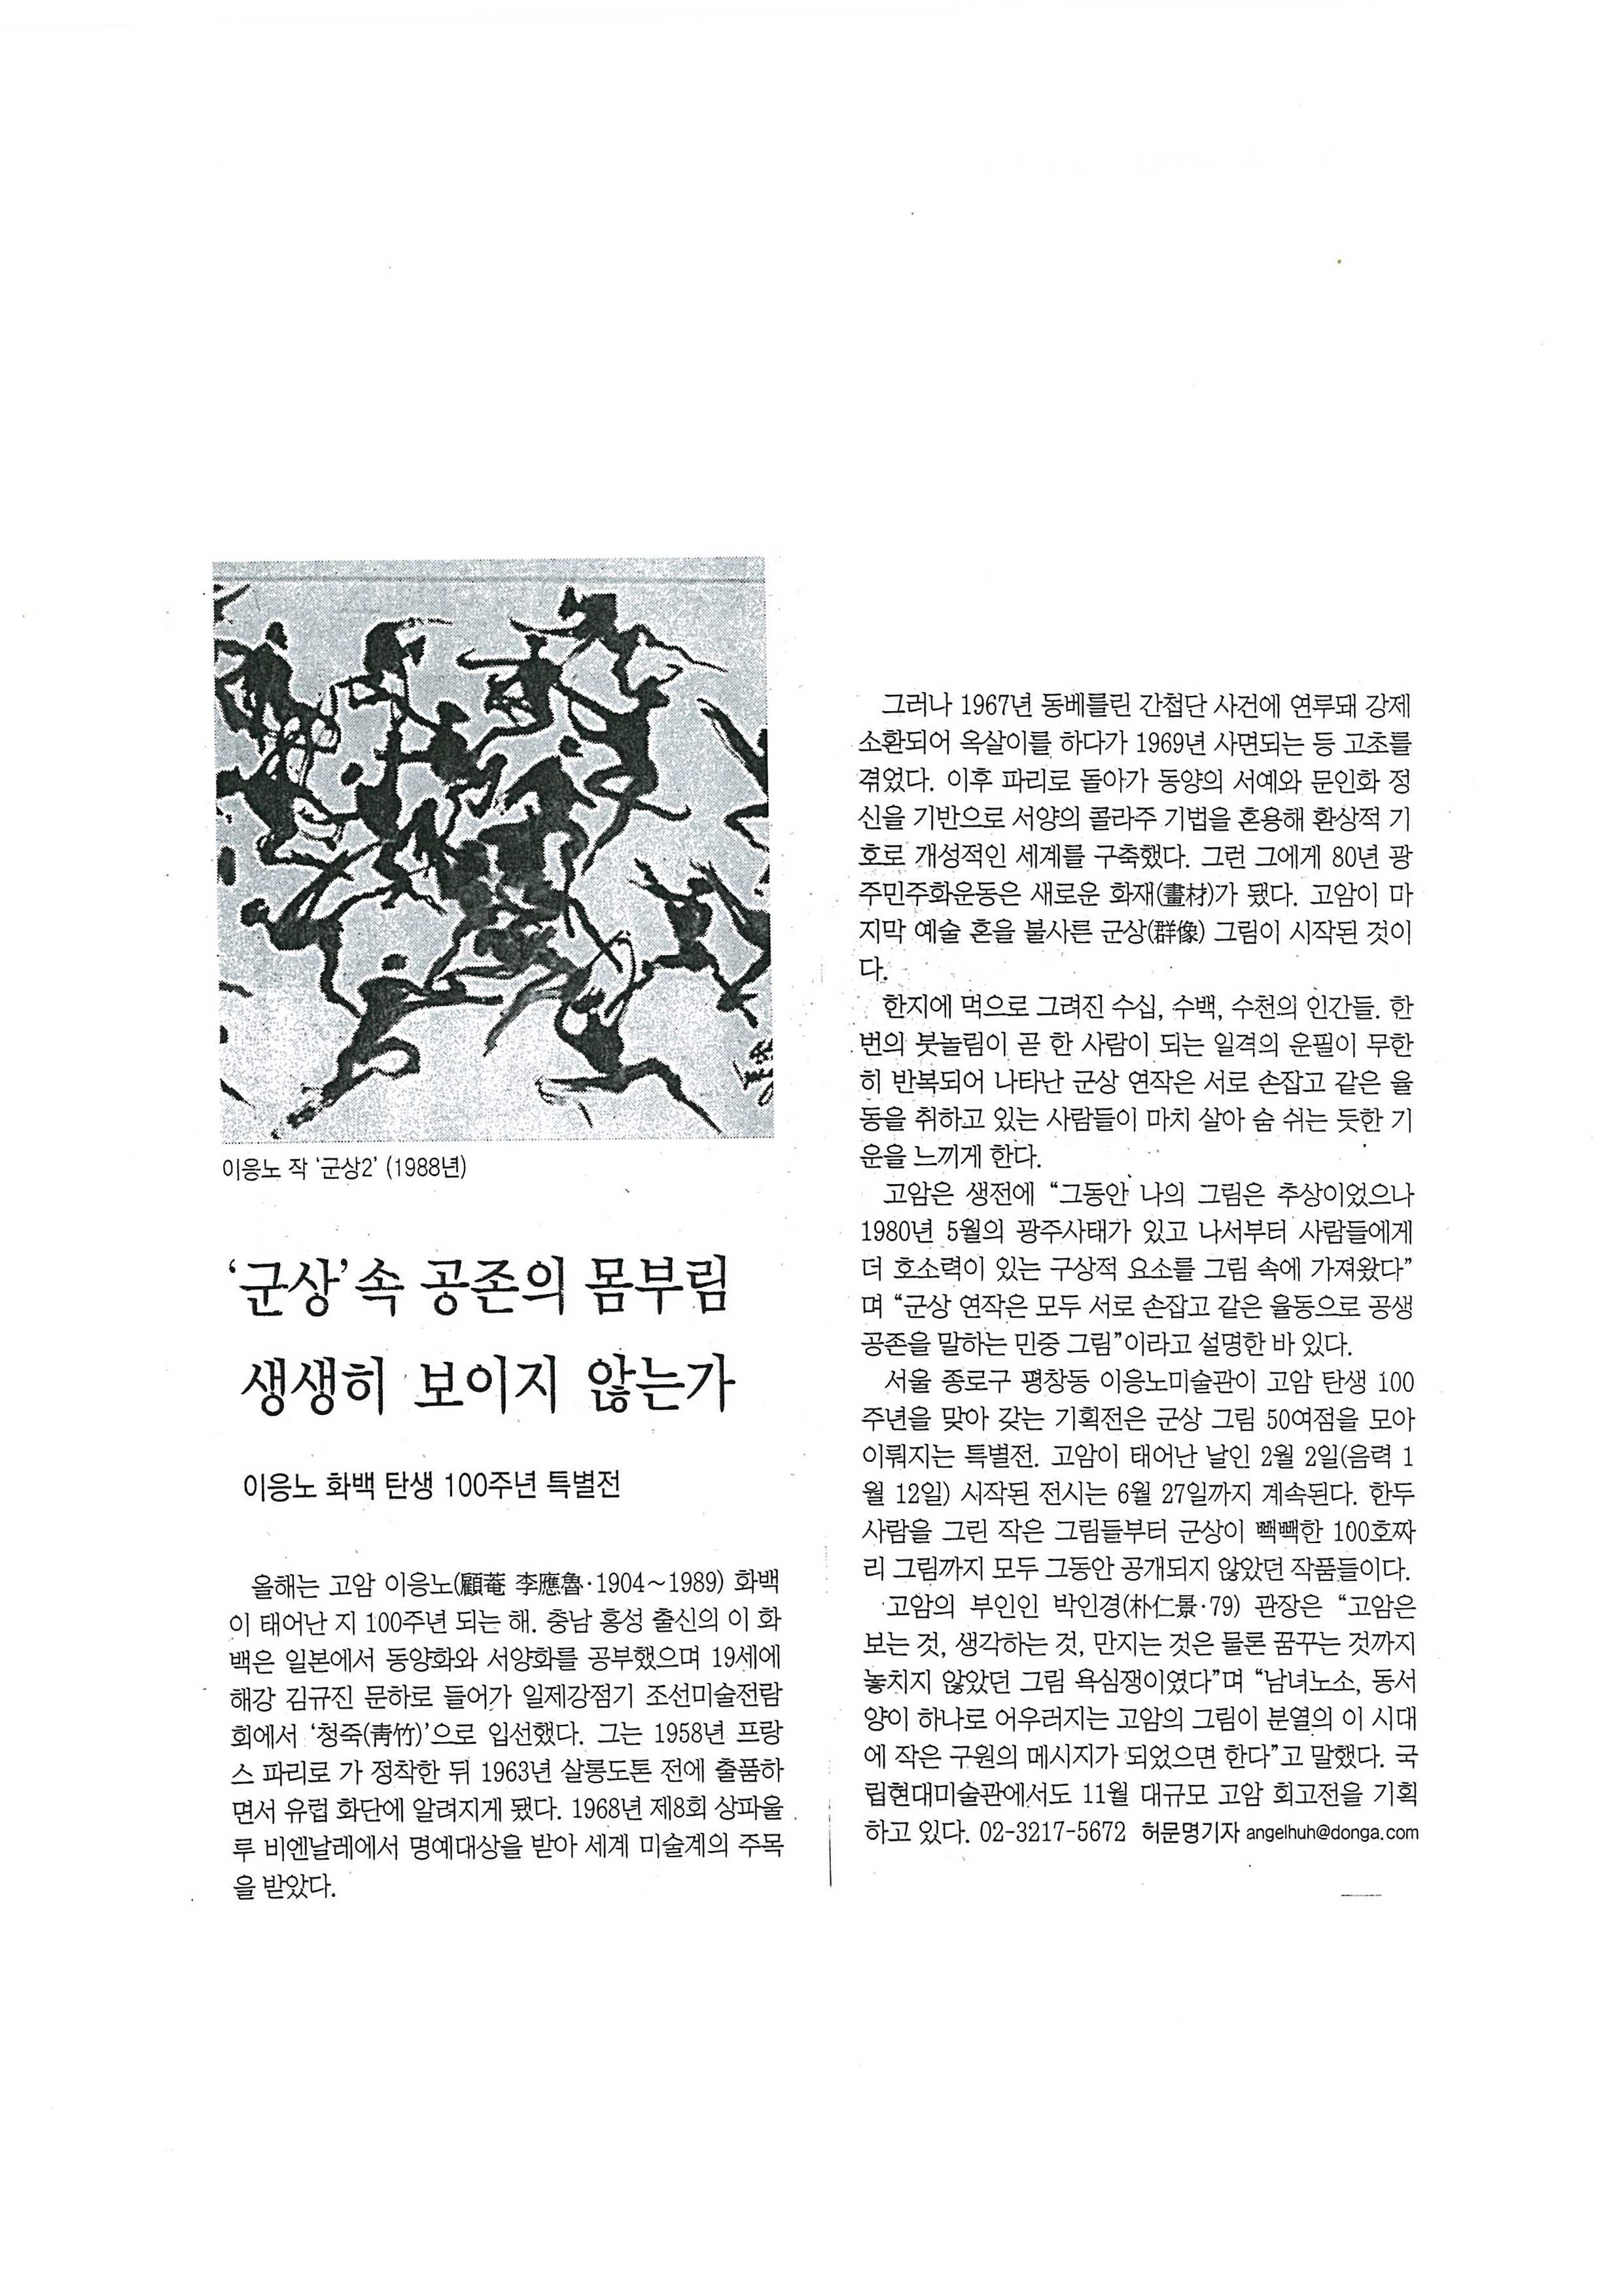 「군상 속 공존의 몸부림 생생히 보이지 않는가」, 『동아일보』